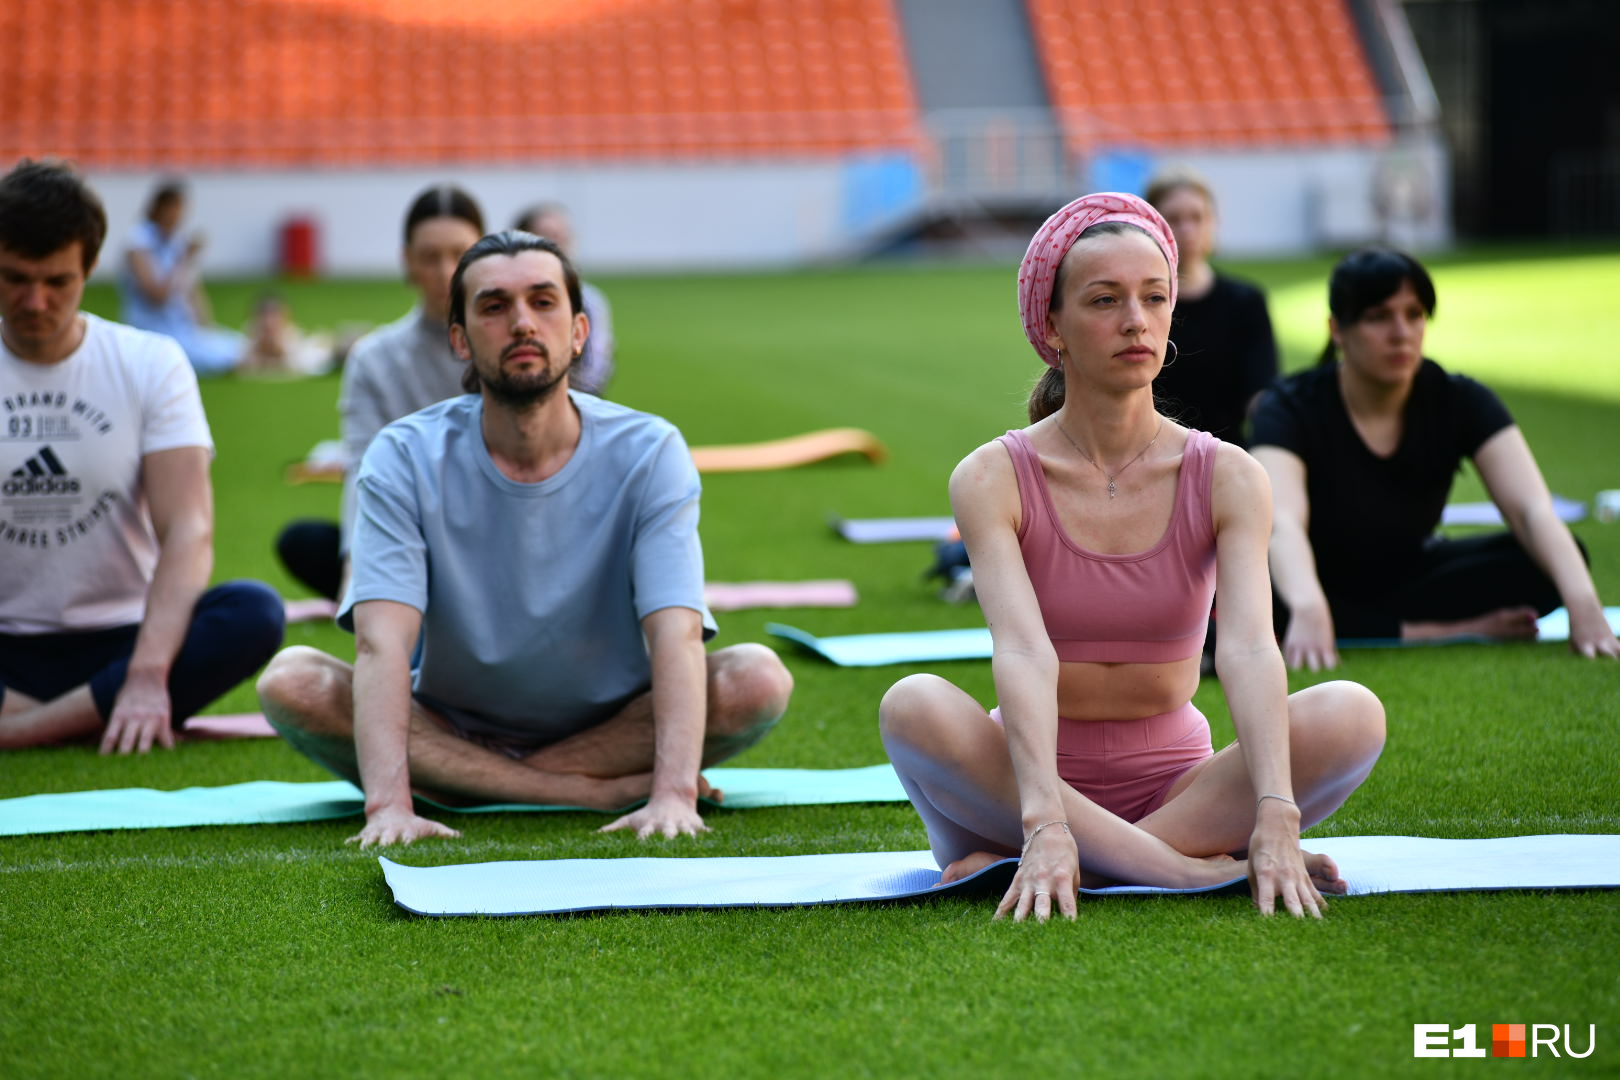 Мужчины на тренировке тоже были, так что йога — это не только для женщин